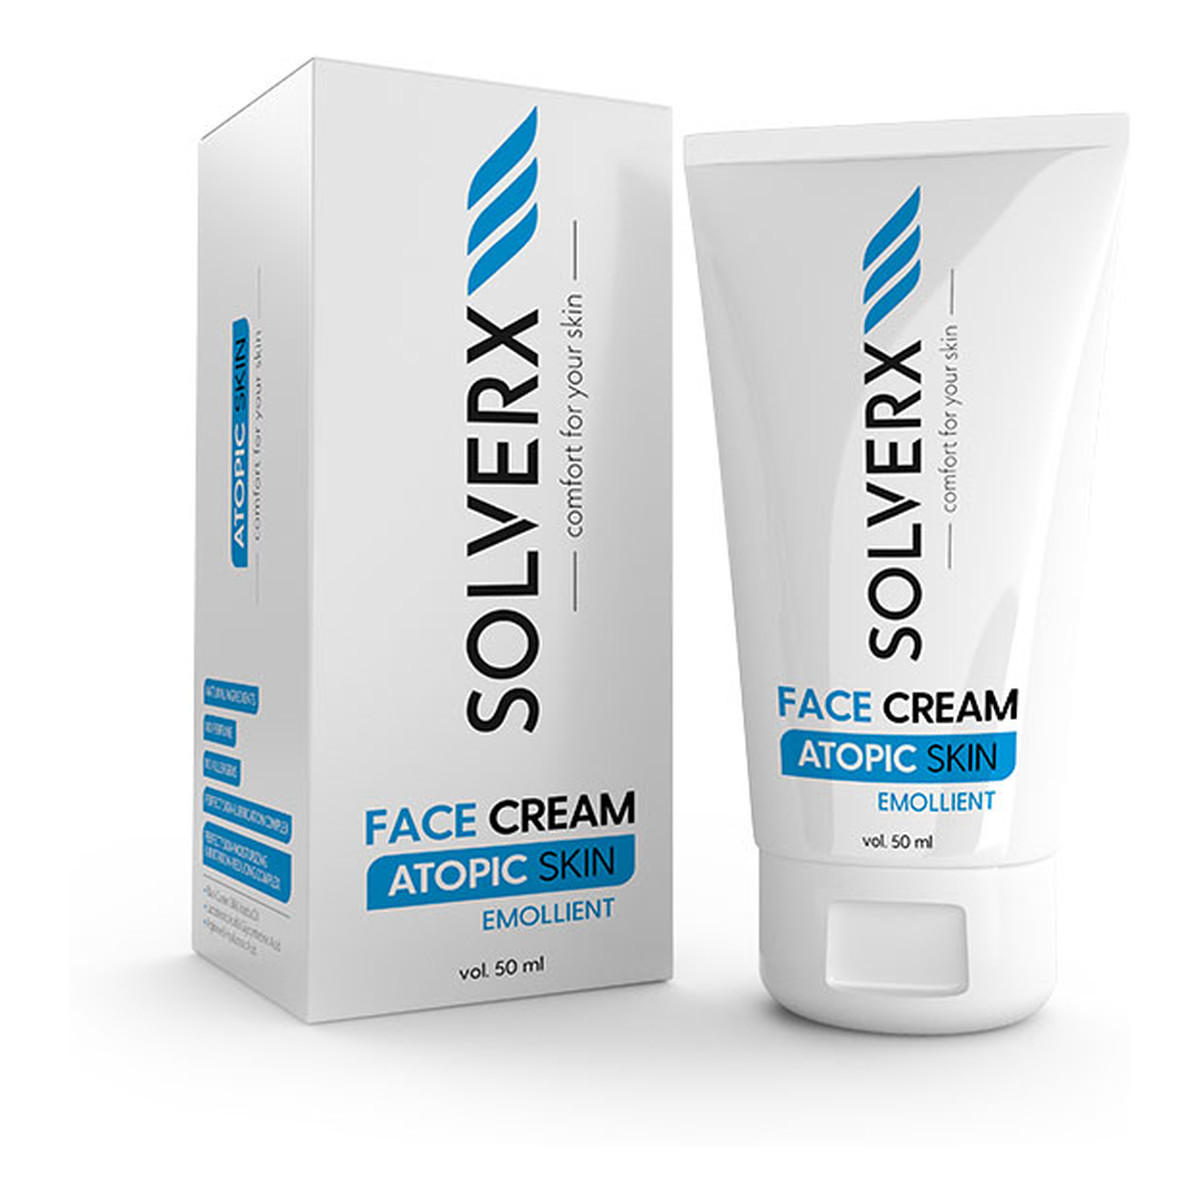 Solverx Atopic Skin Face Cream 50ml